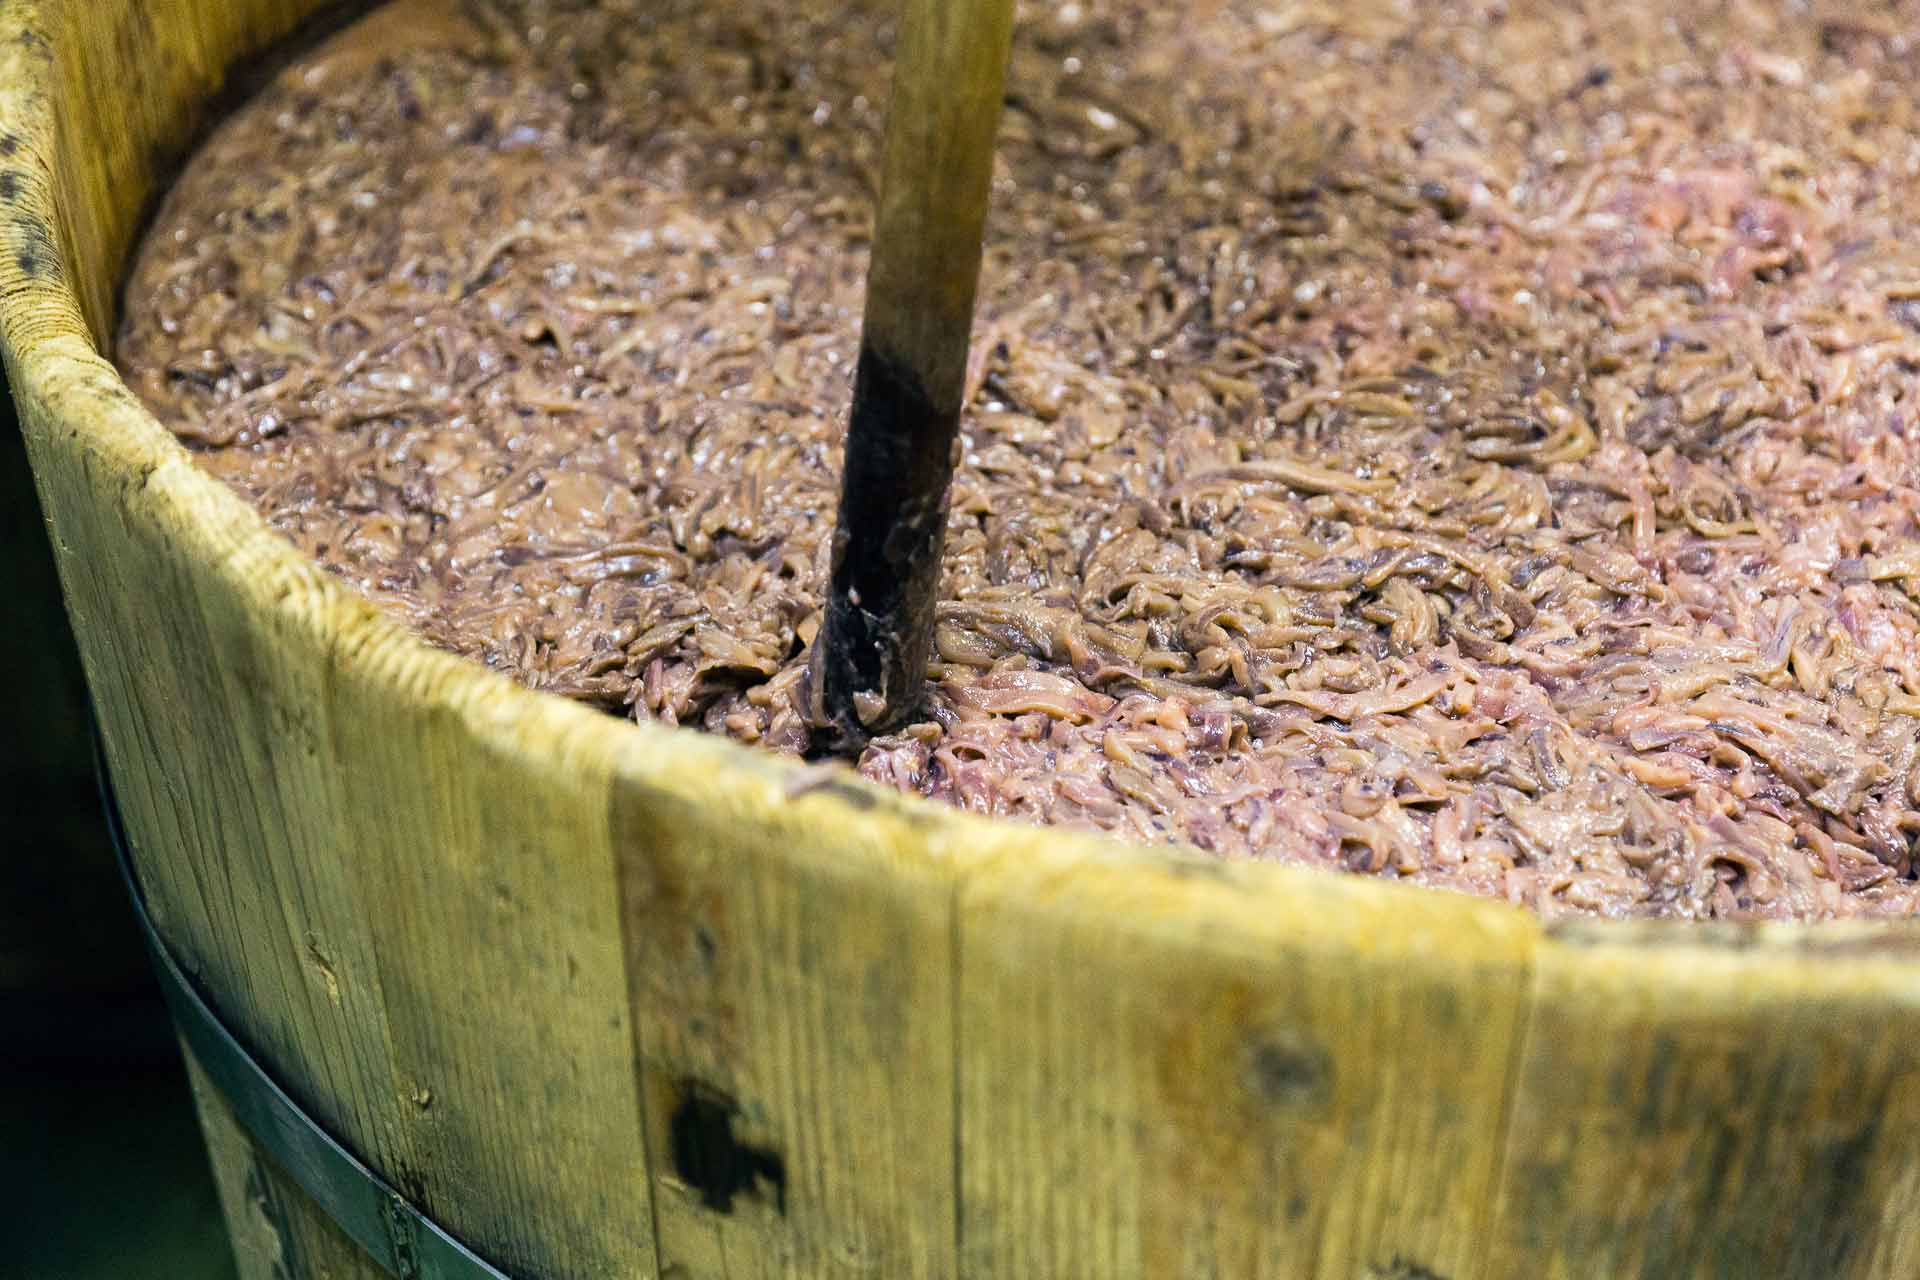  500kgの塩辛が入る木樽1つには、およそ3000匹のイカが入っています